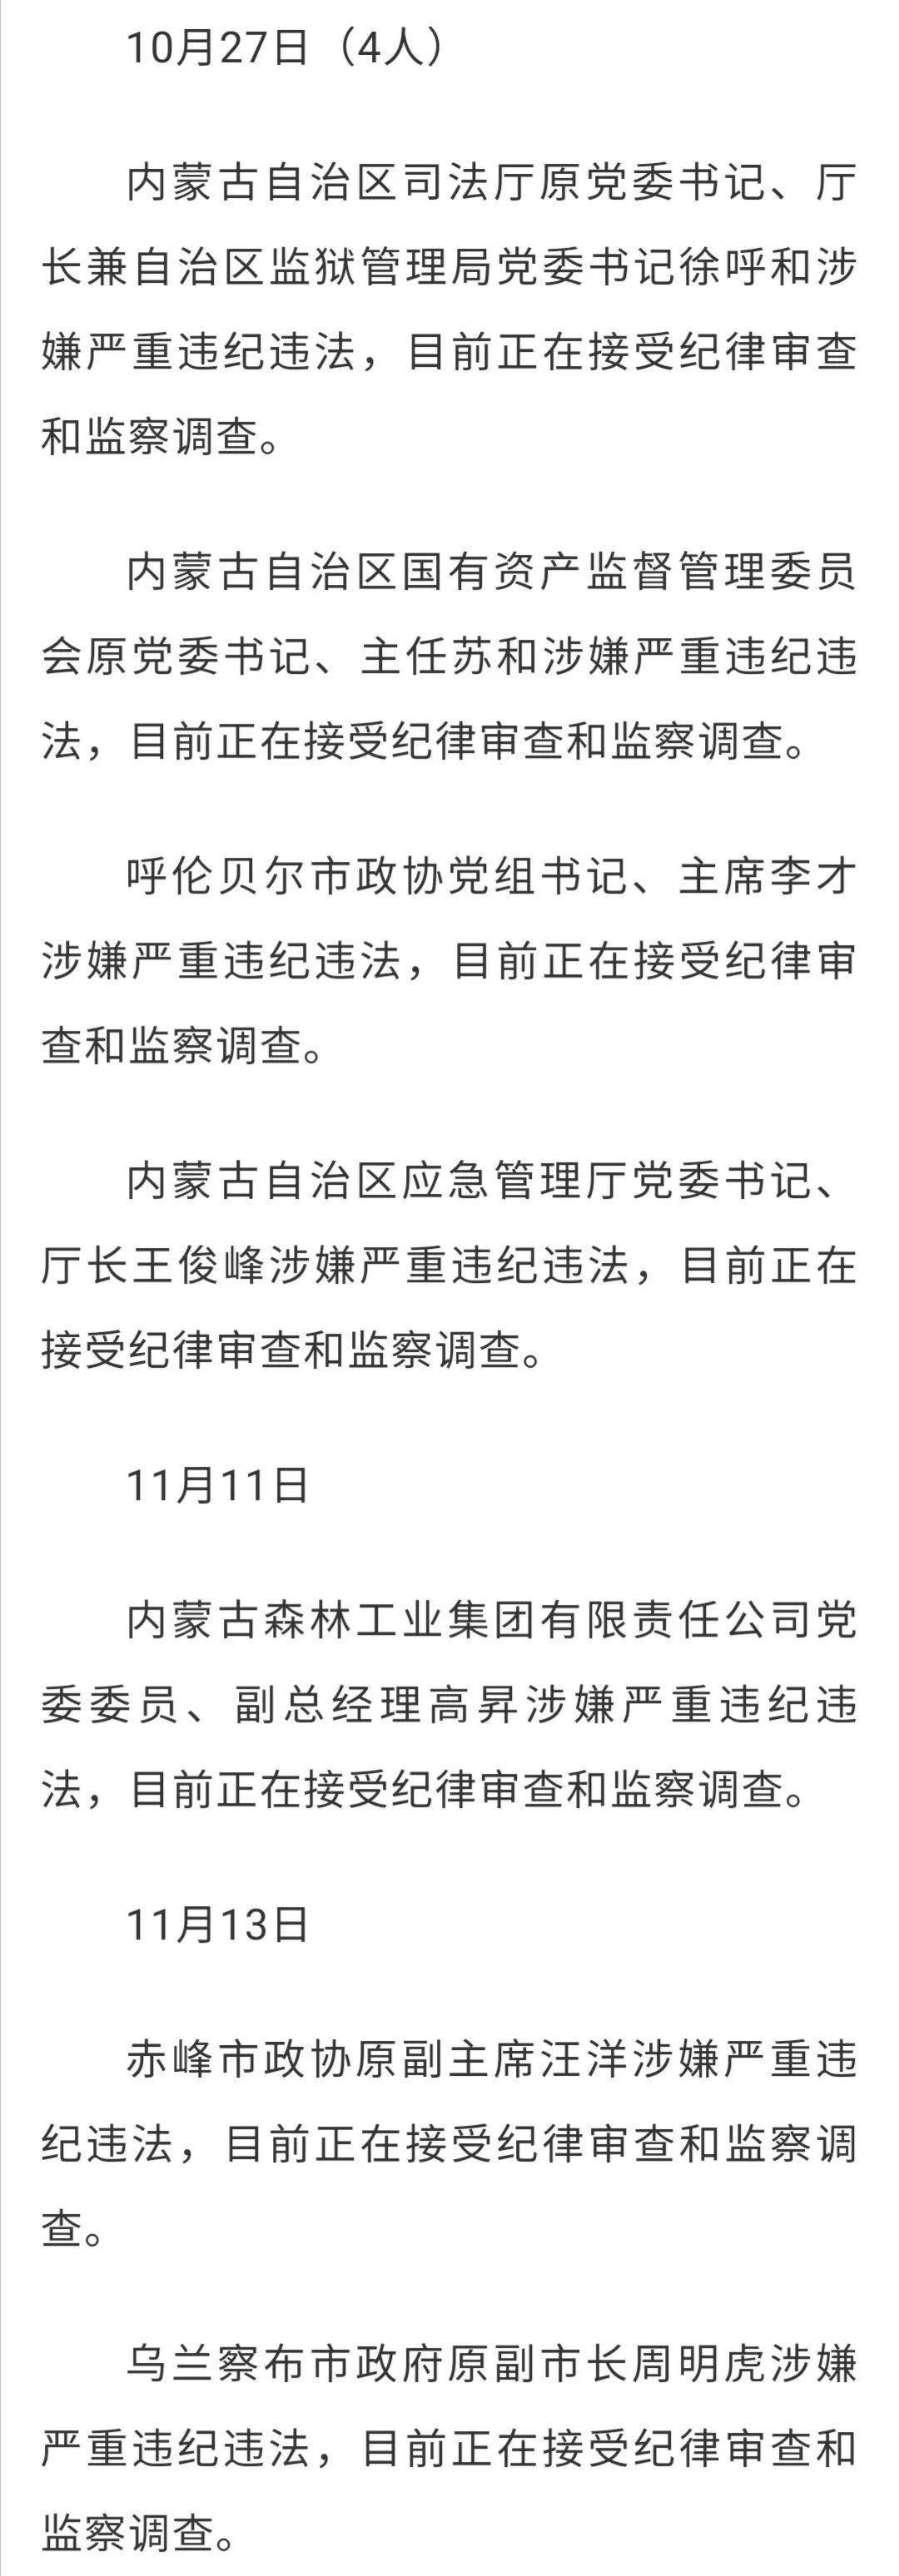 12月4日(5人)内蒙古自治区鄂尔多斯市政协副主席曹郅琛涉嫌严重违法